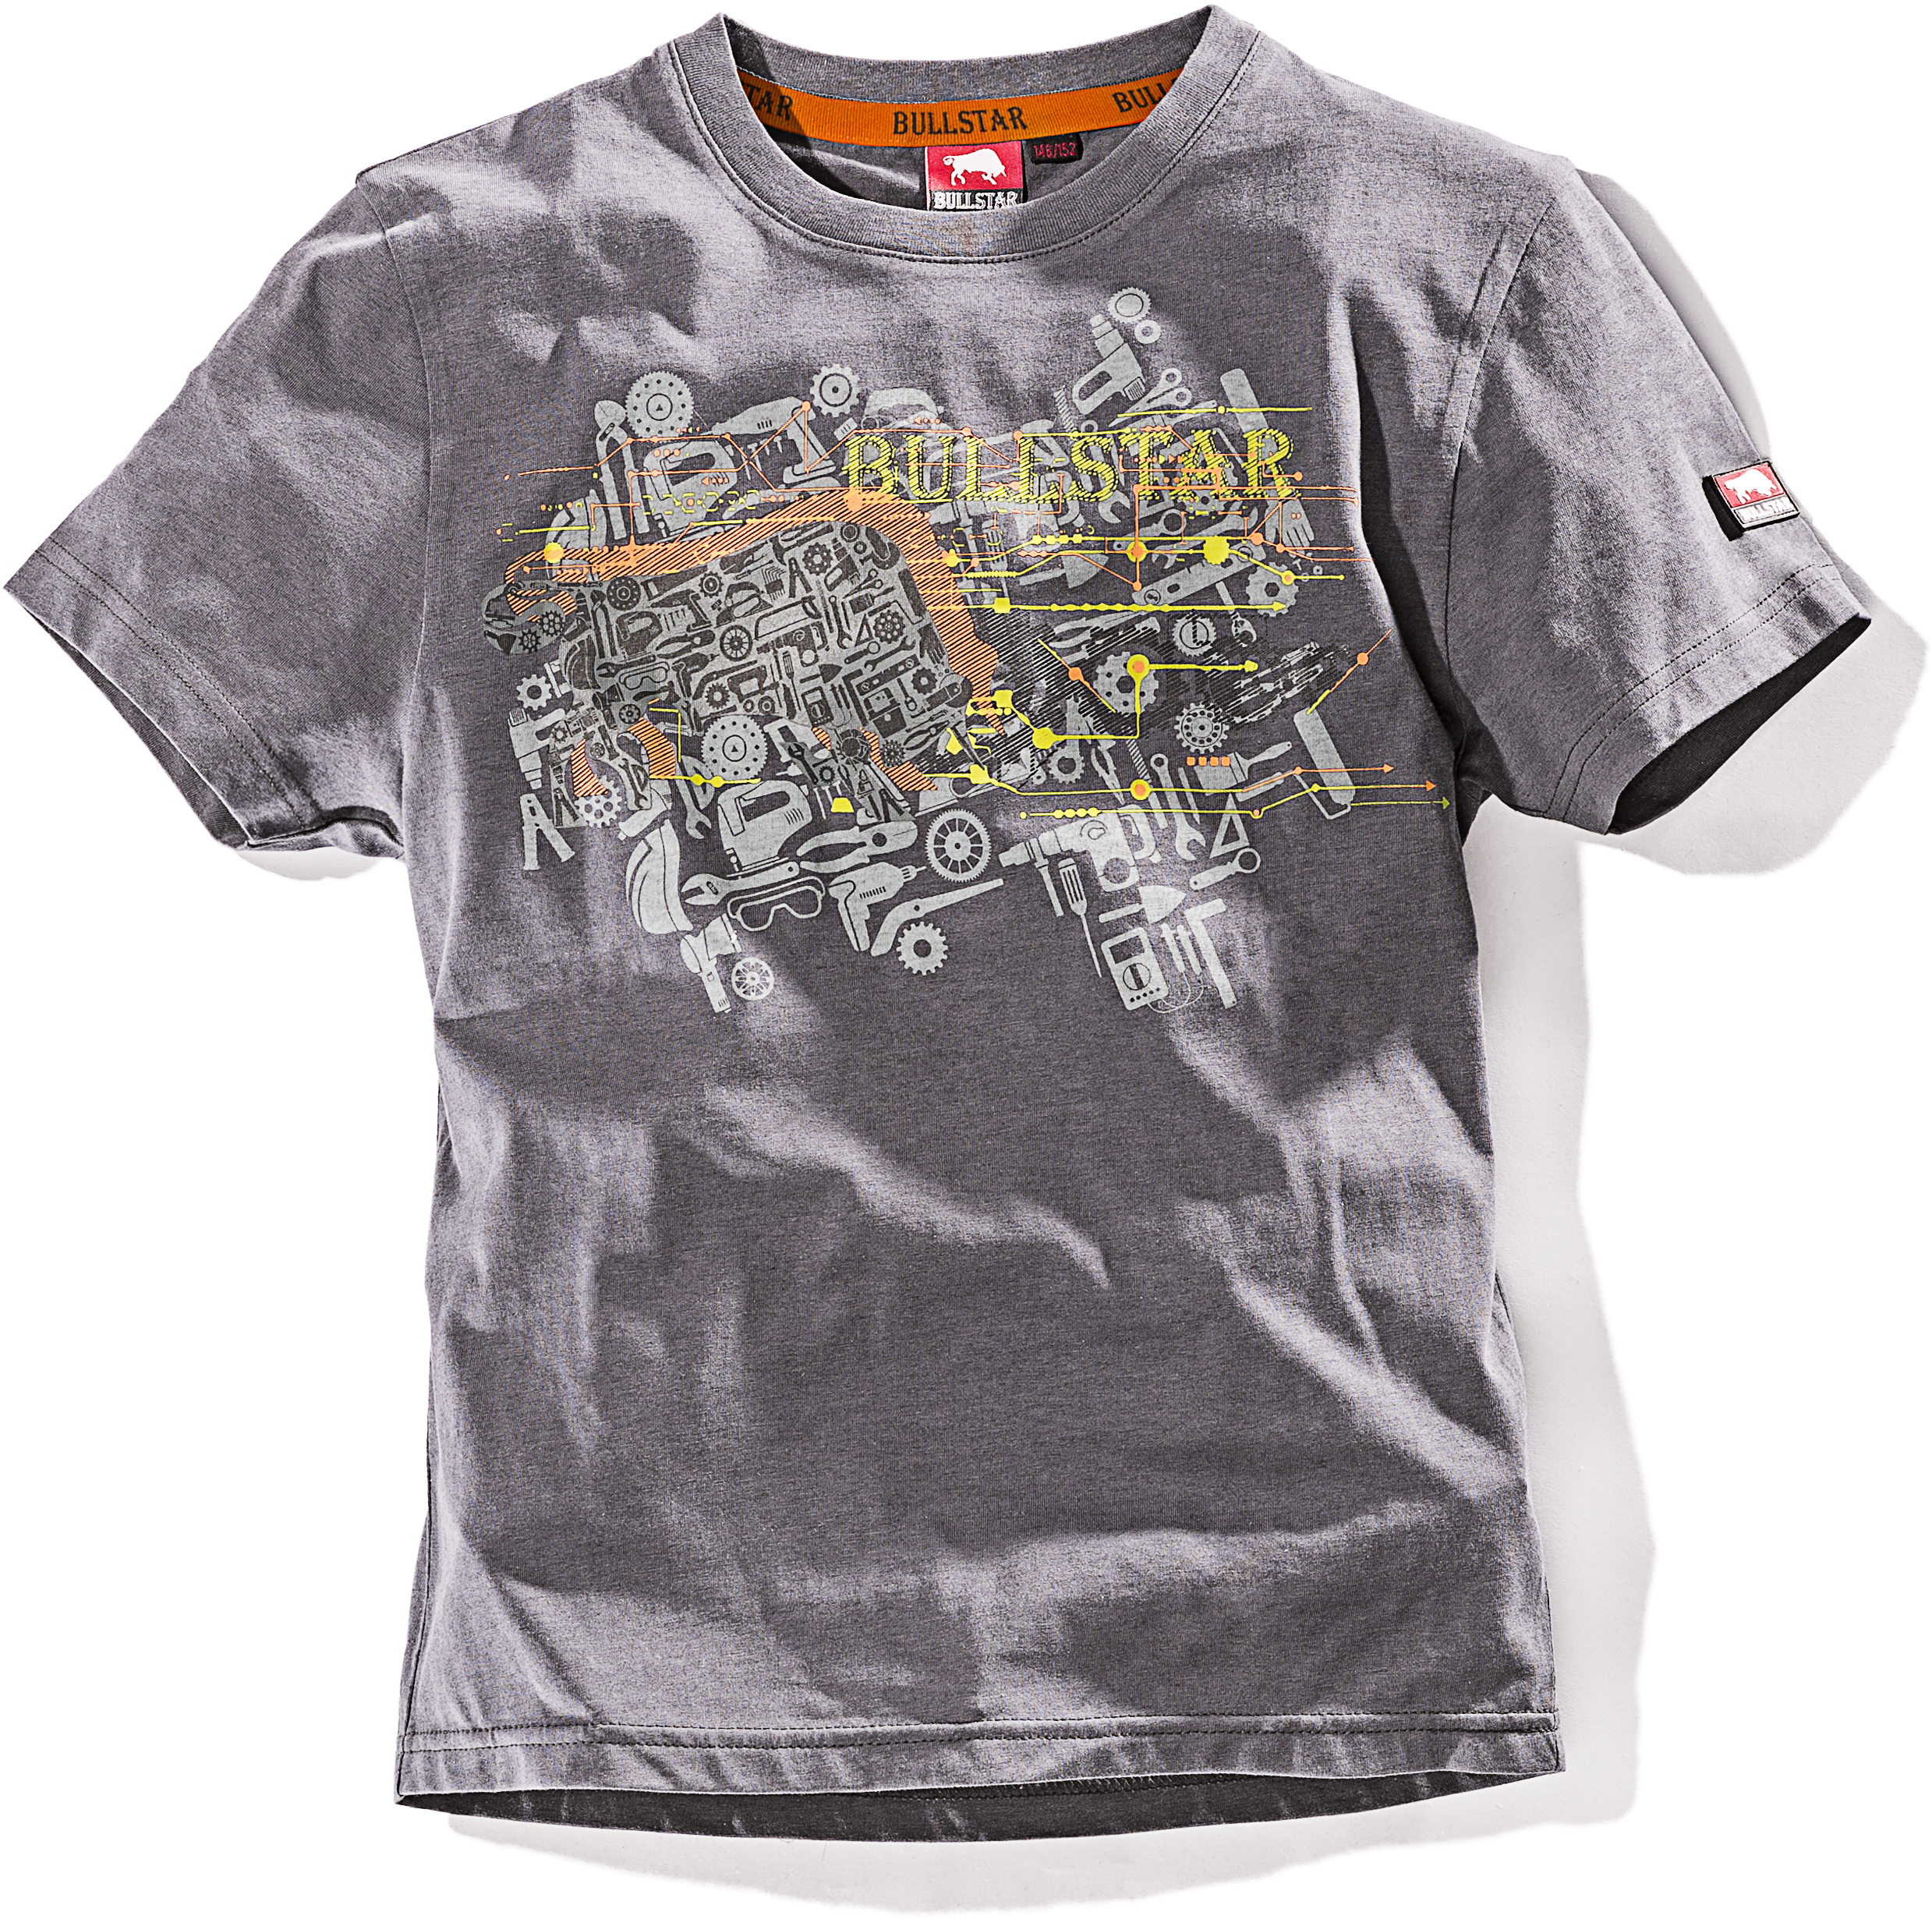 WILLAX Kinder-T-Shirt ULTRA grau Gr. 146/152 